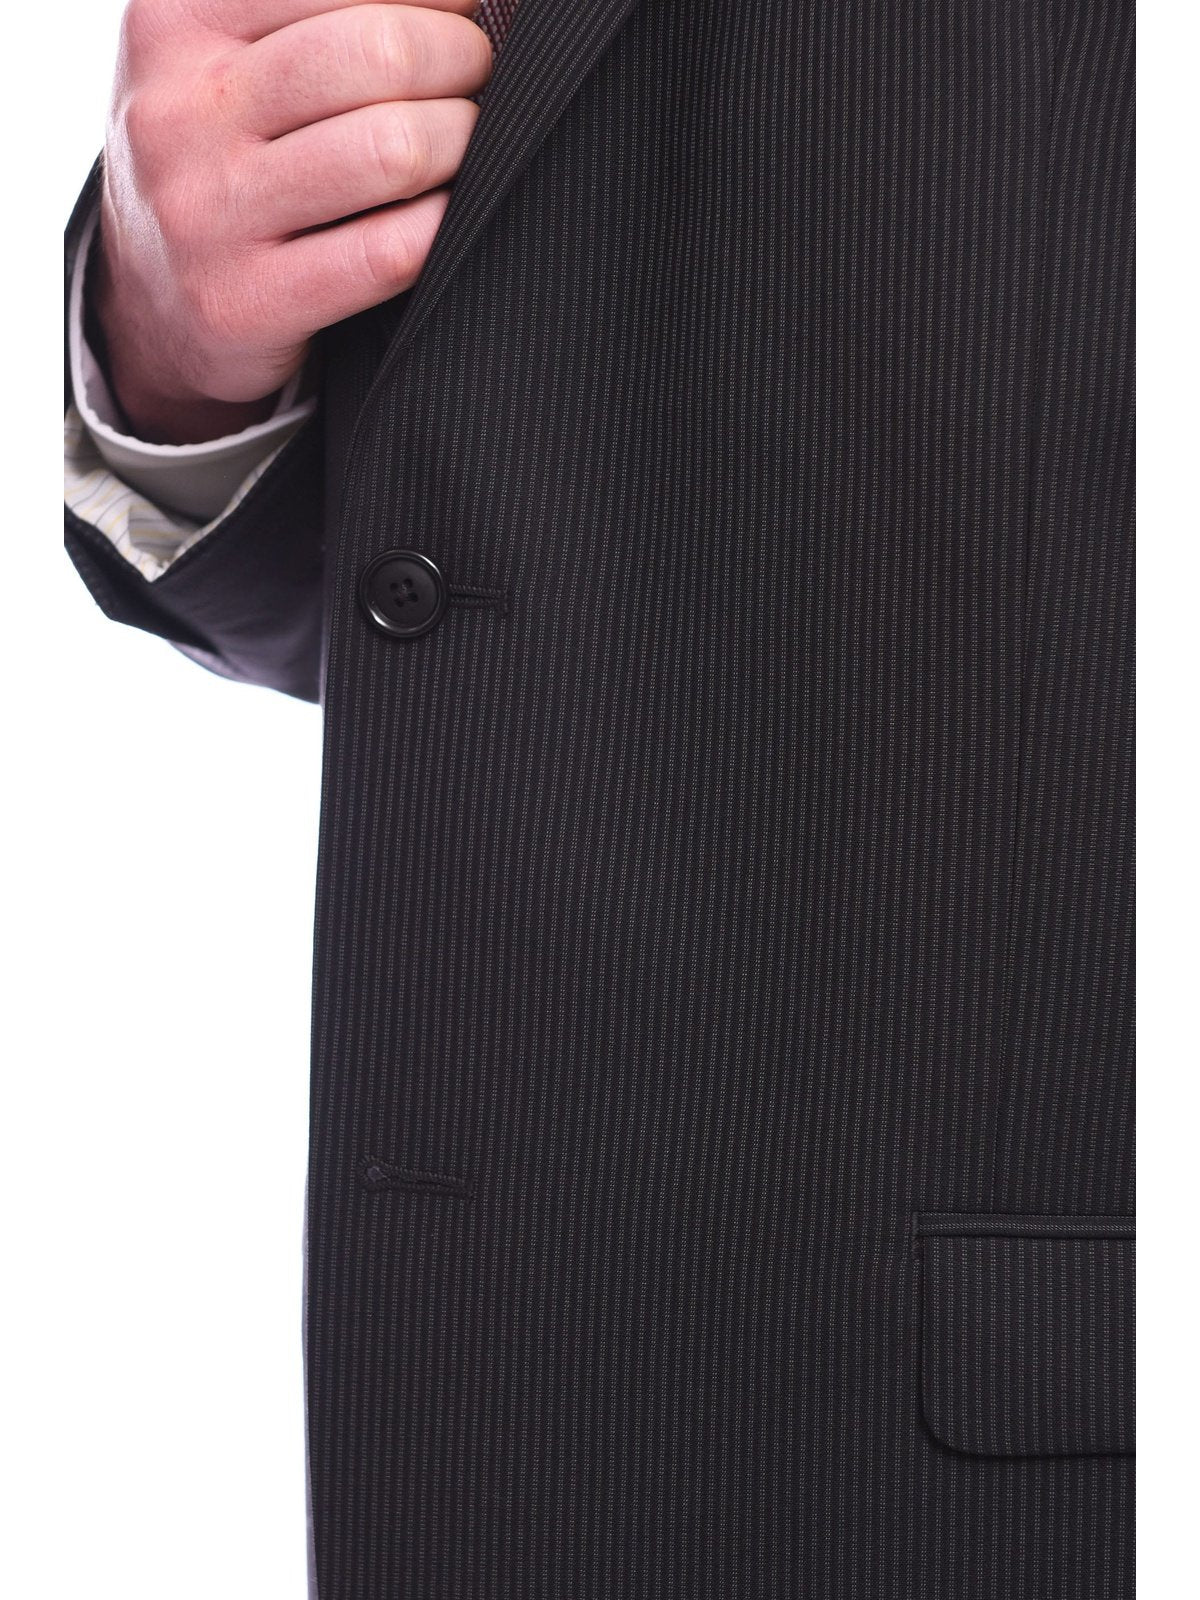 Bruno Piattelli Bruno Piattelli Classic Fit Black Pinstripe Two Button Wool Suit